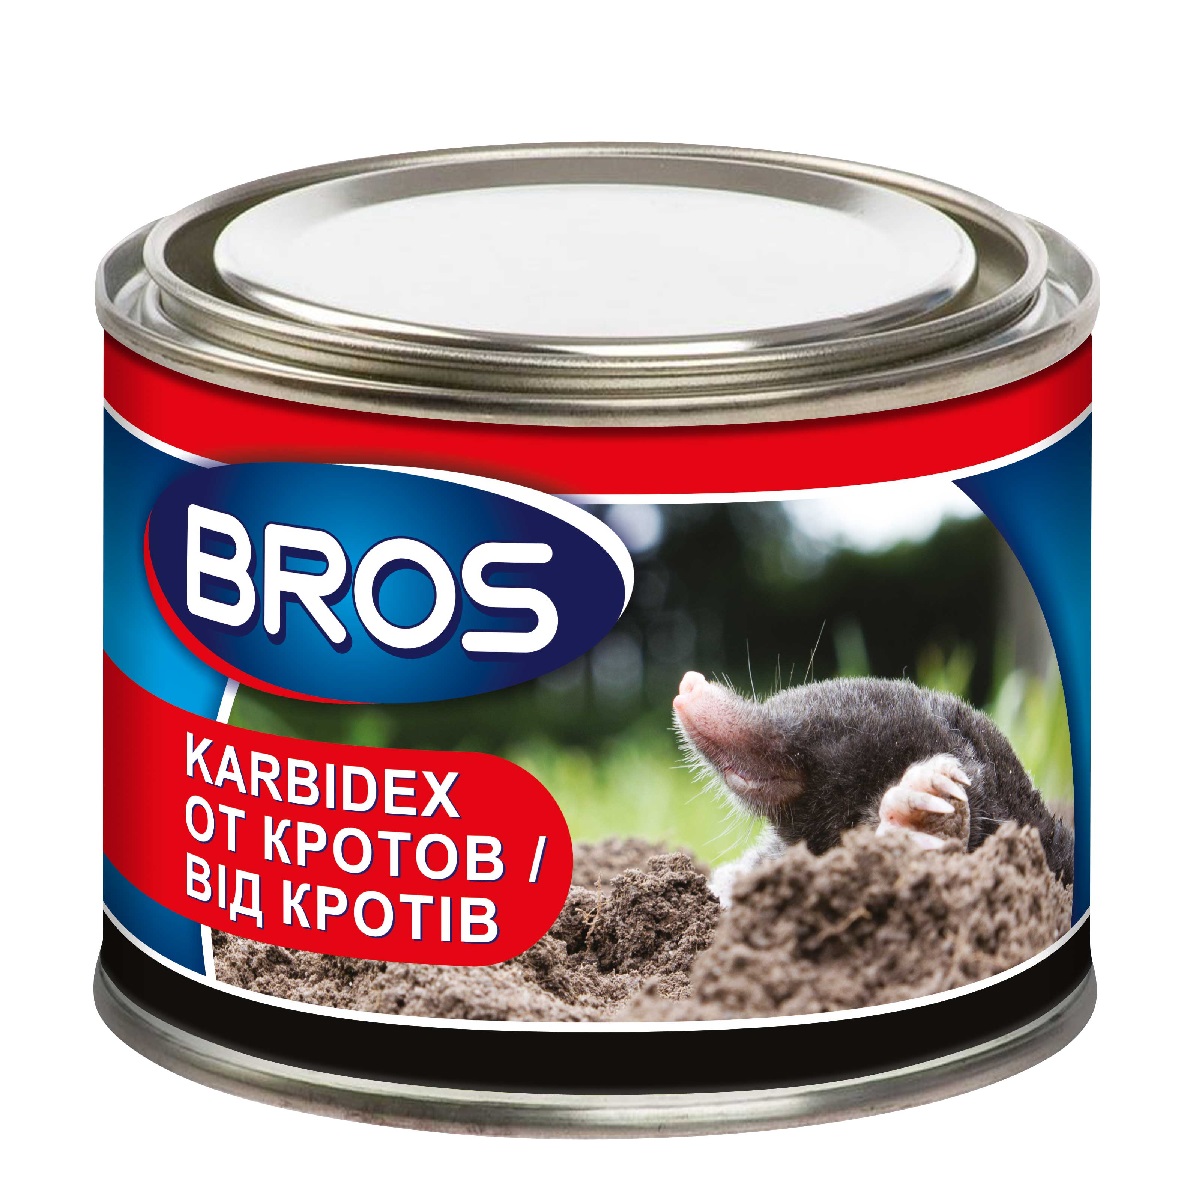 Средство для отпугивания кротов Karbidex Bros 500 г / Брос